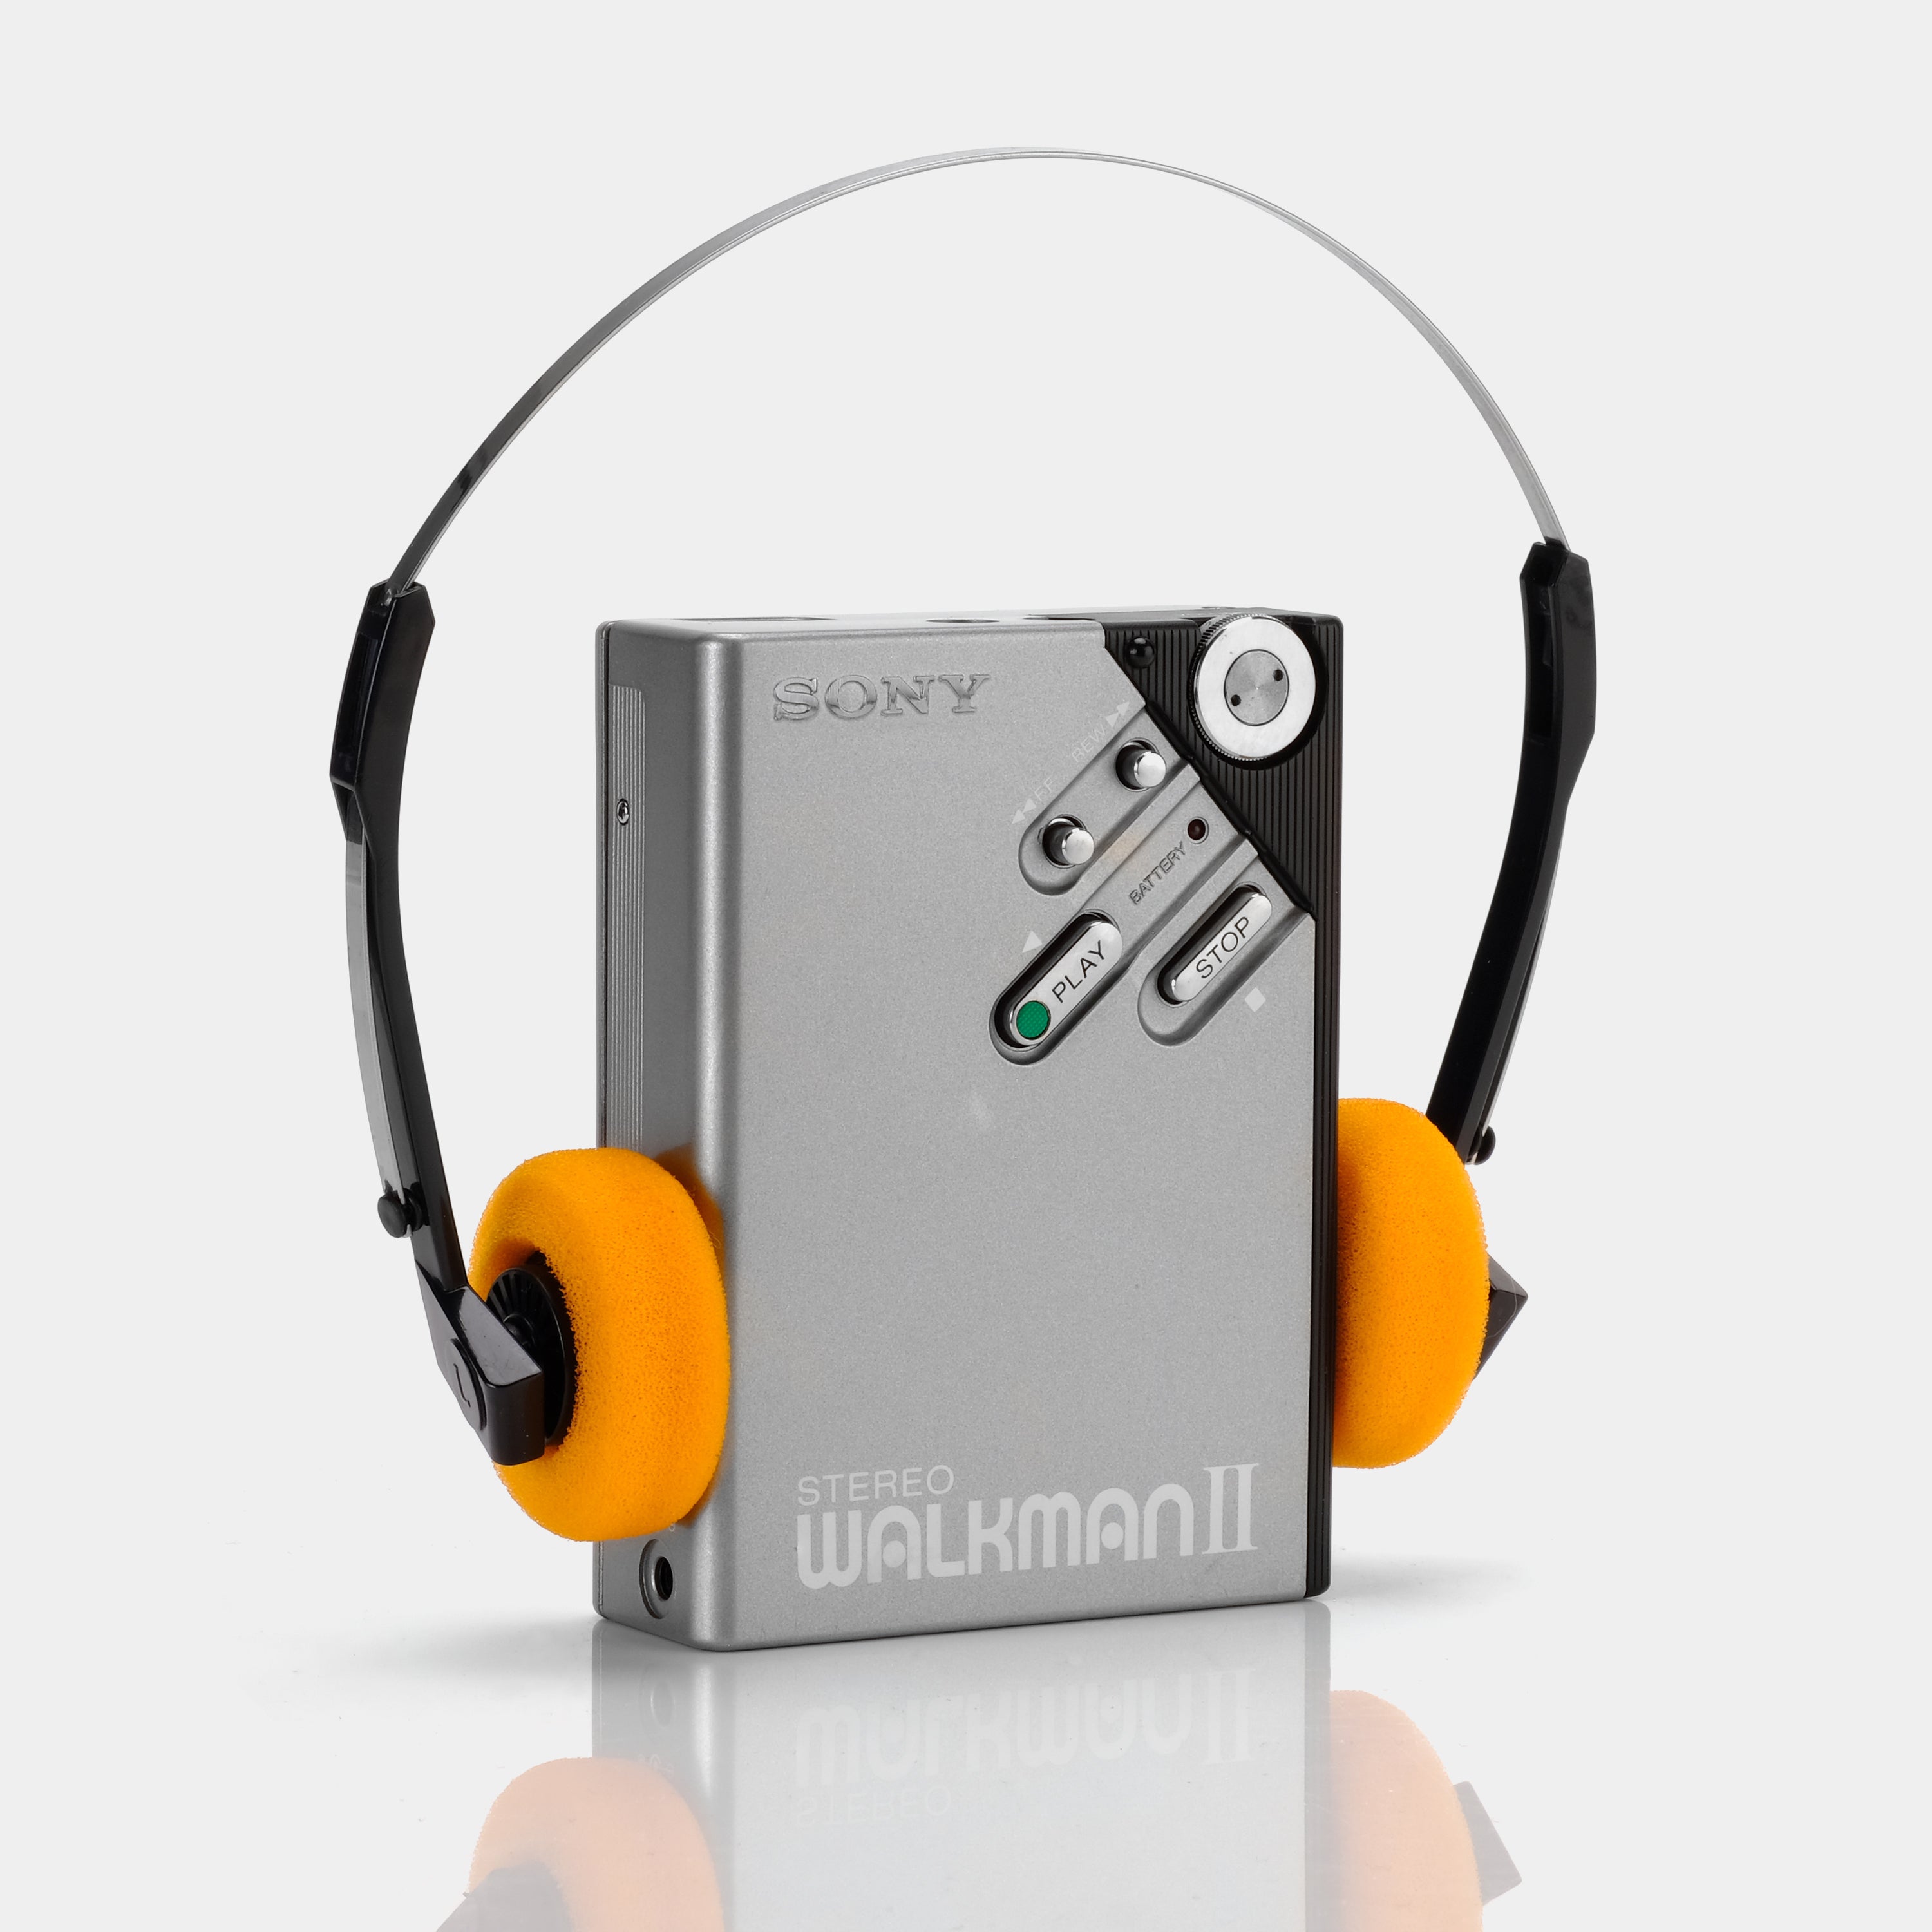 Sony Walkman II WM-2 Silver Portable Cassette Player